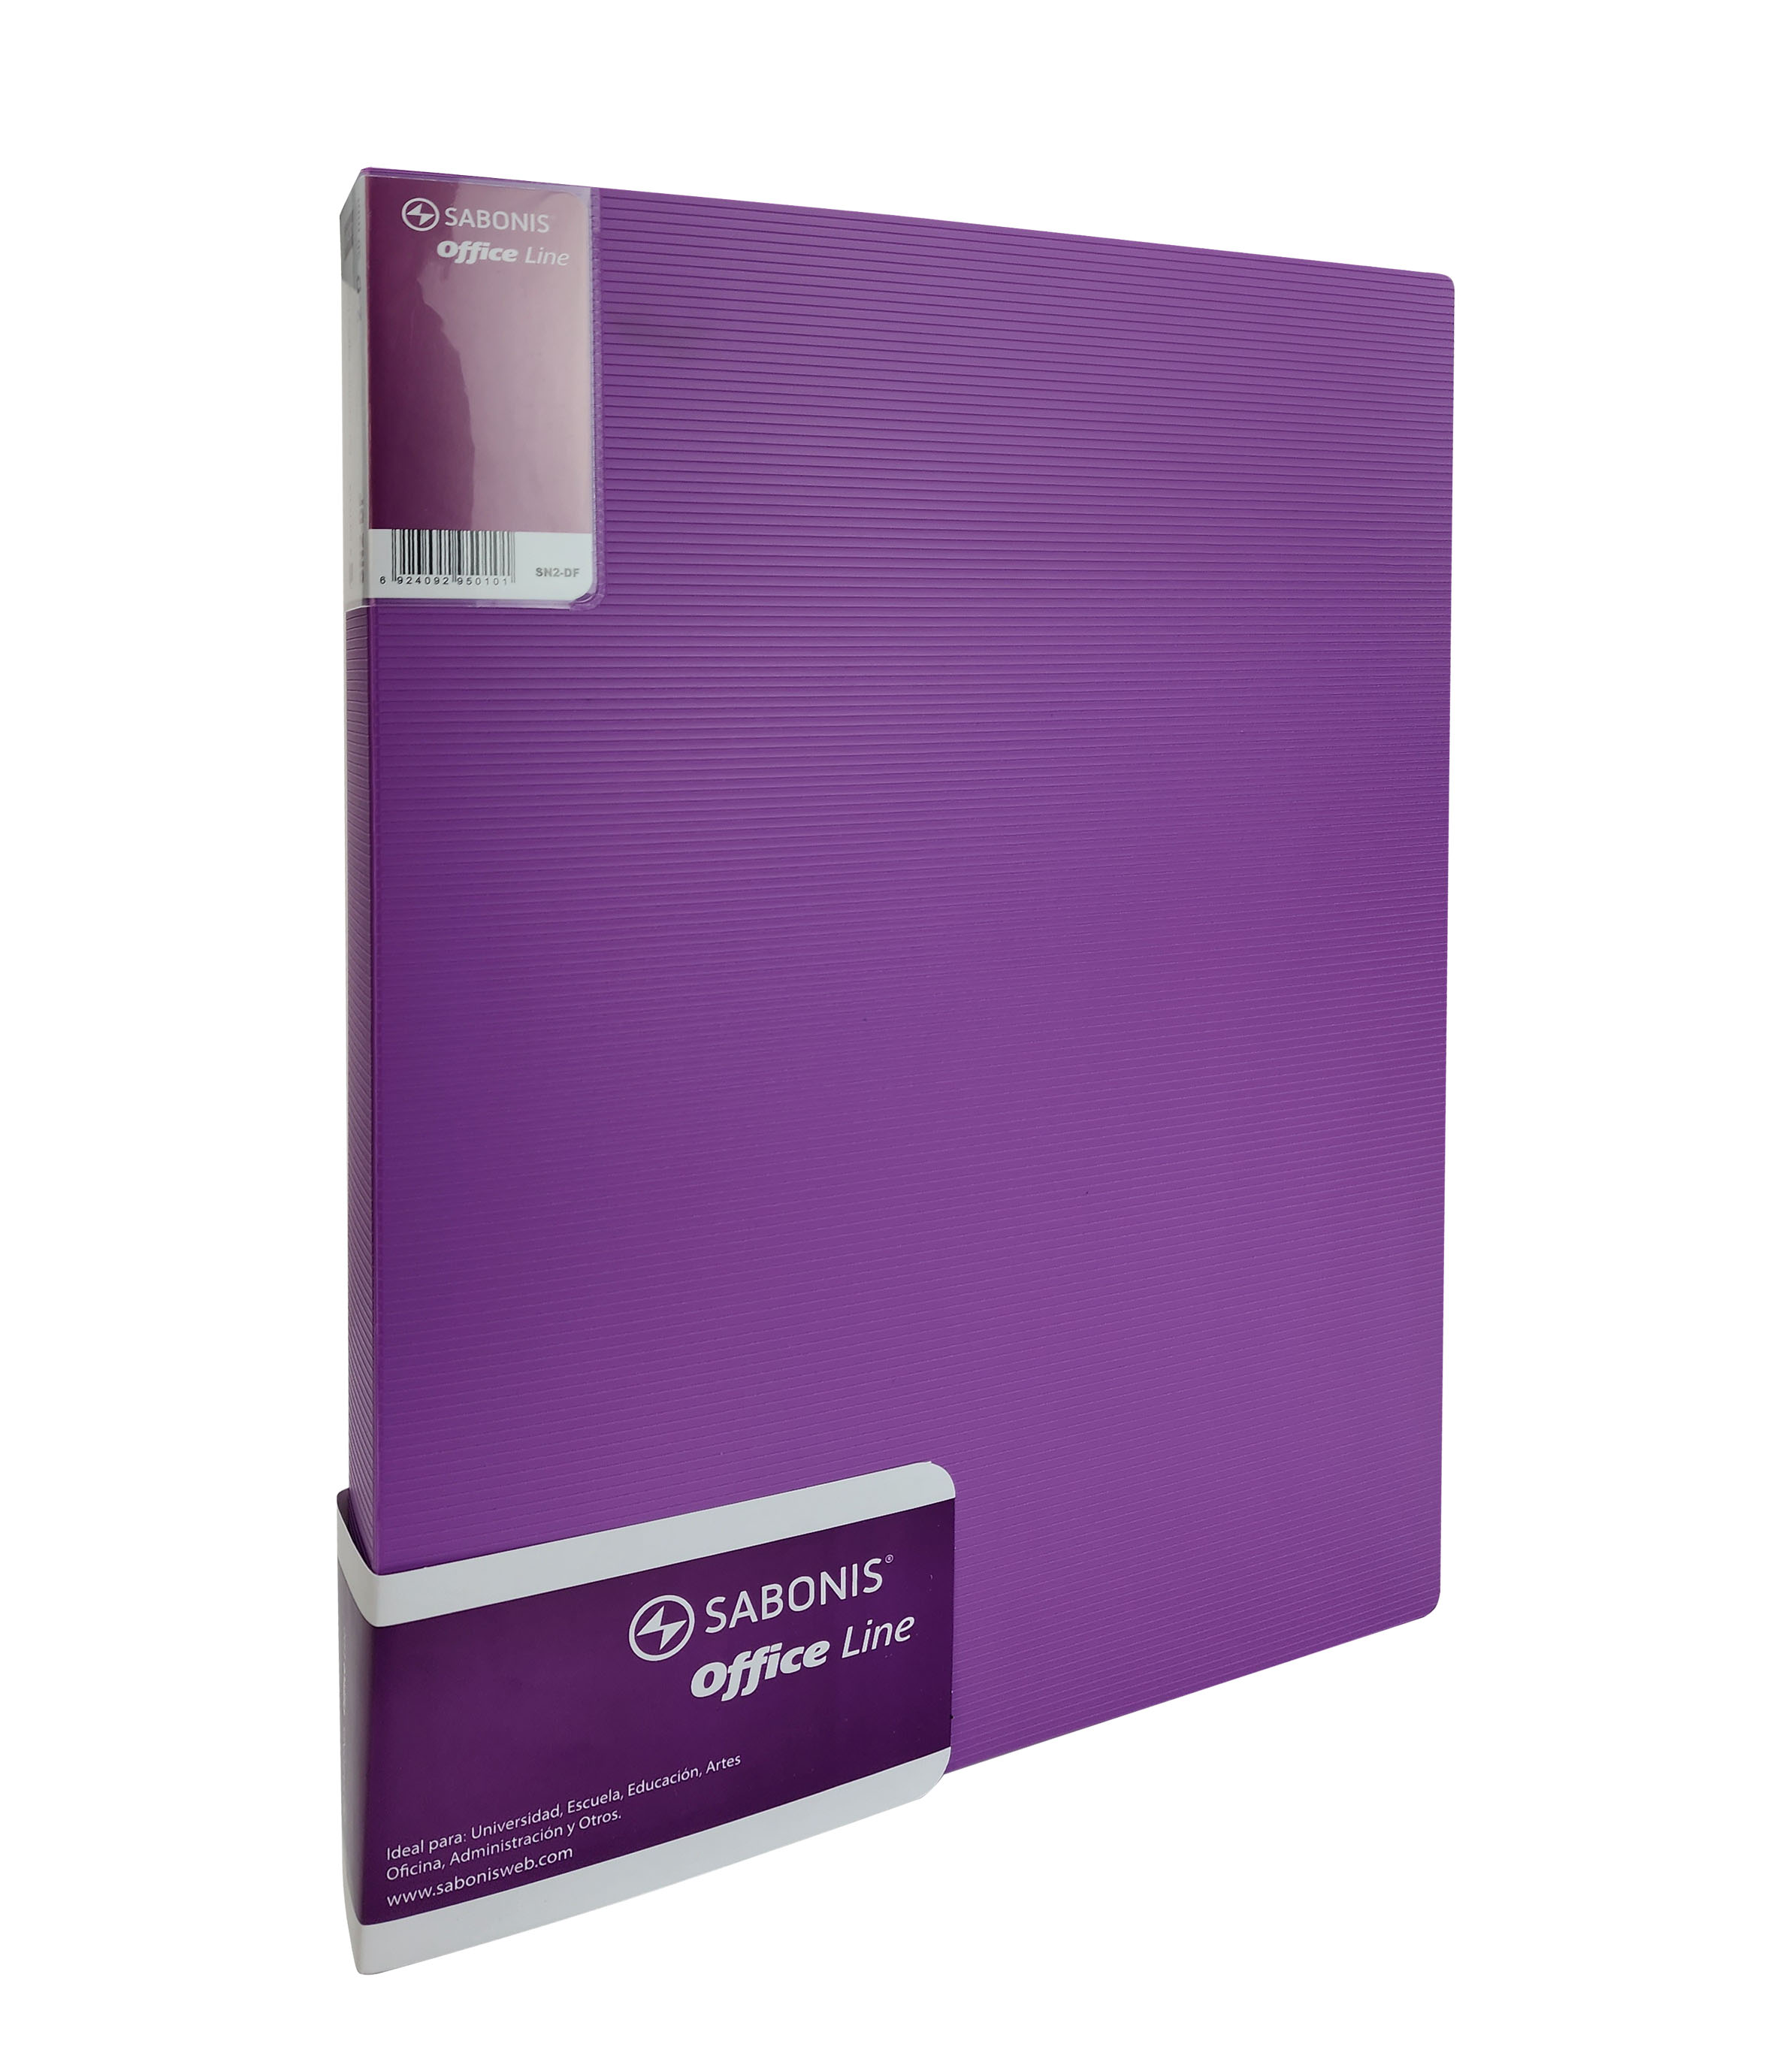 Carpeta / Folder Plástico Tamaño A4 Con Broche Kismet / Clip de Presión -  ST-01507-A - STUDMARK